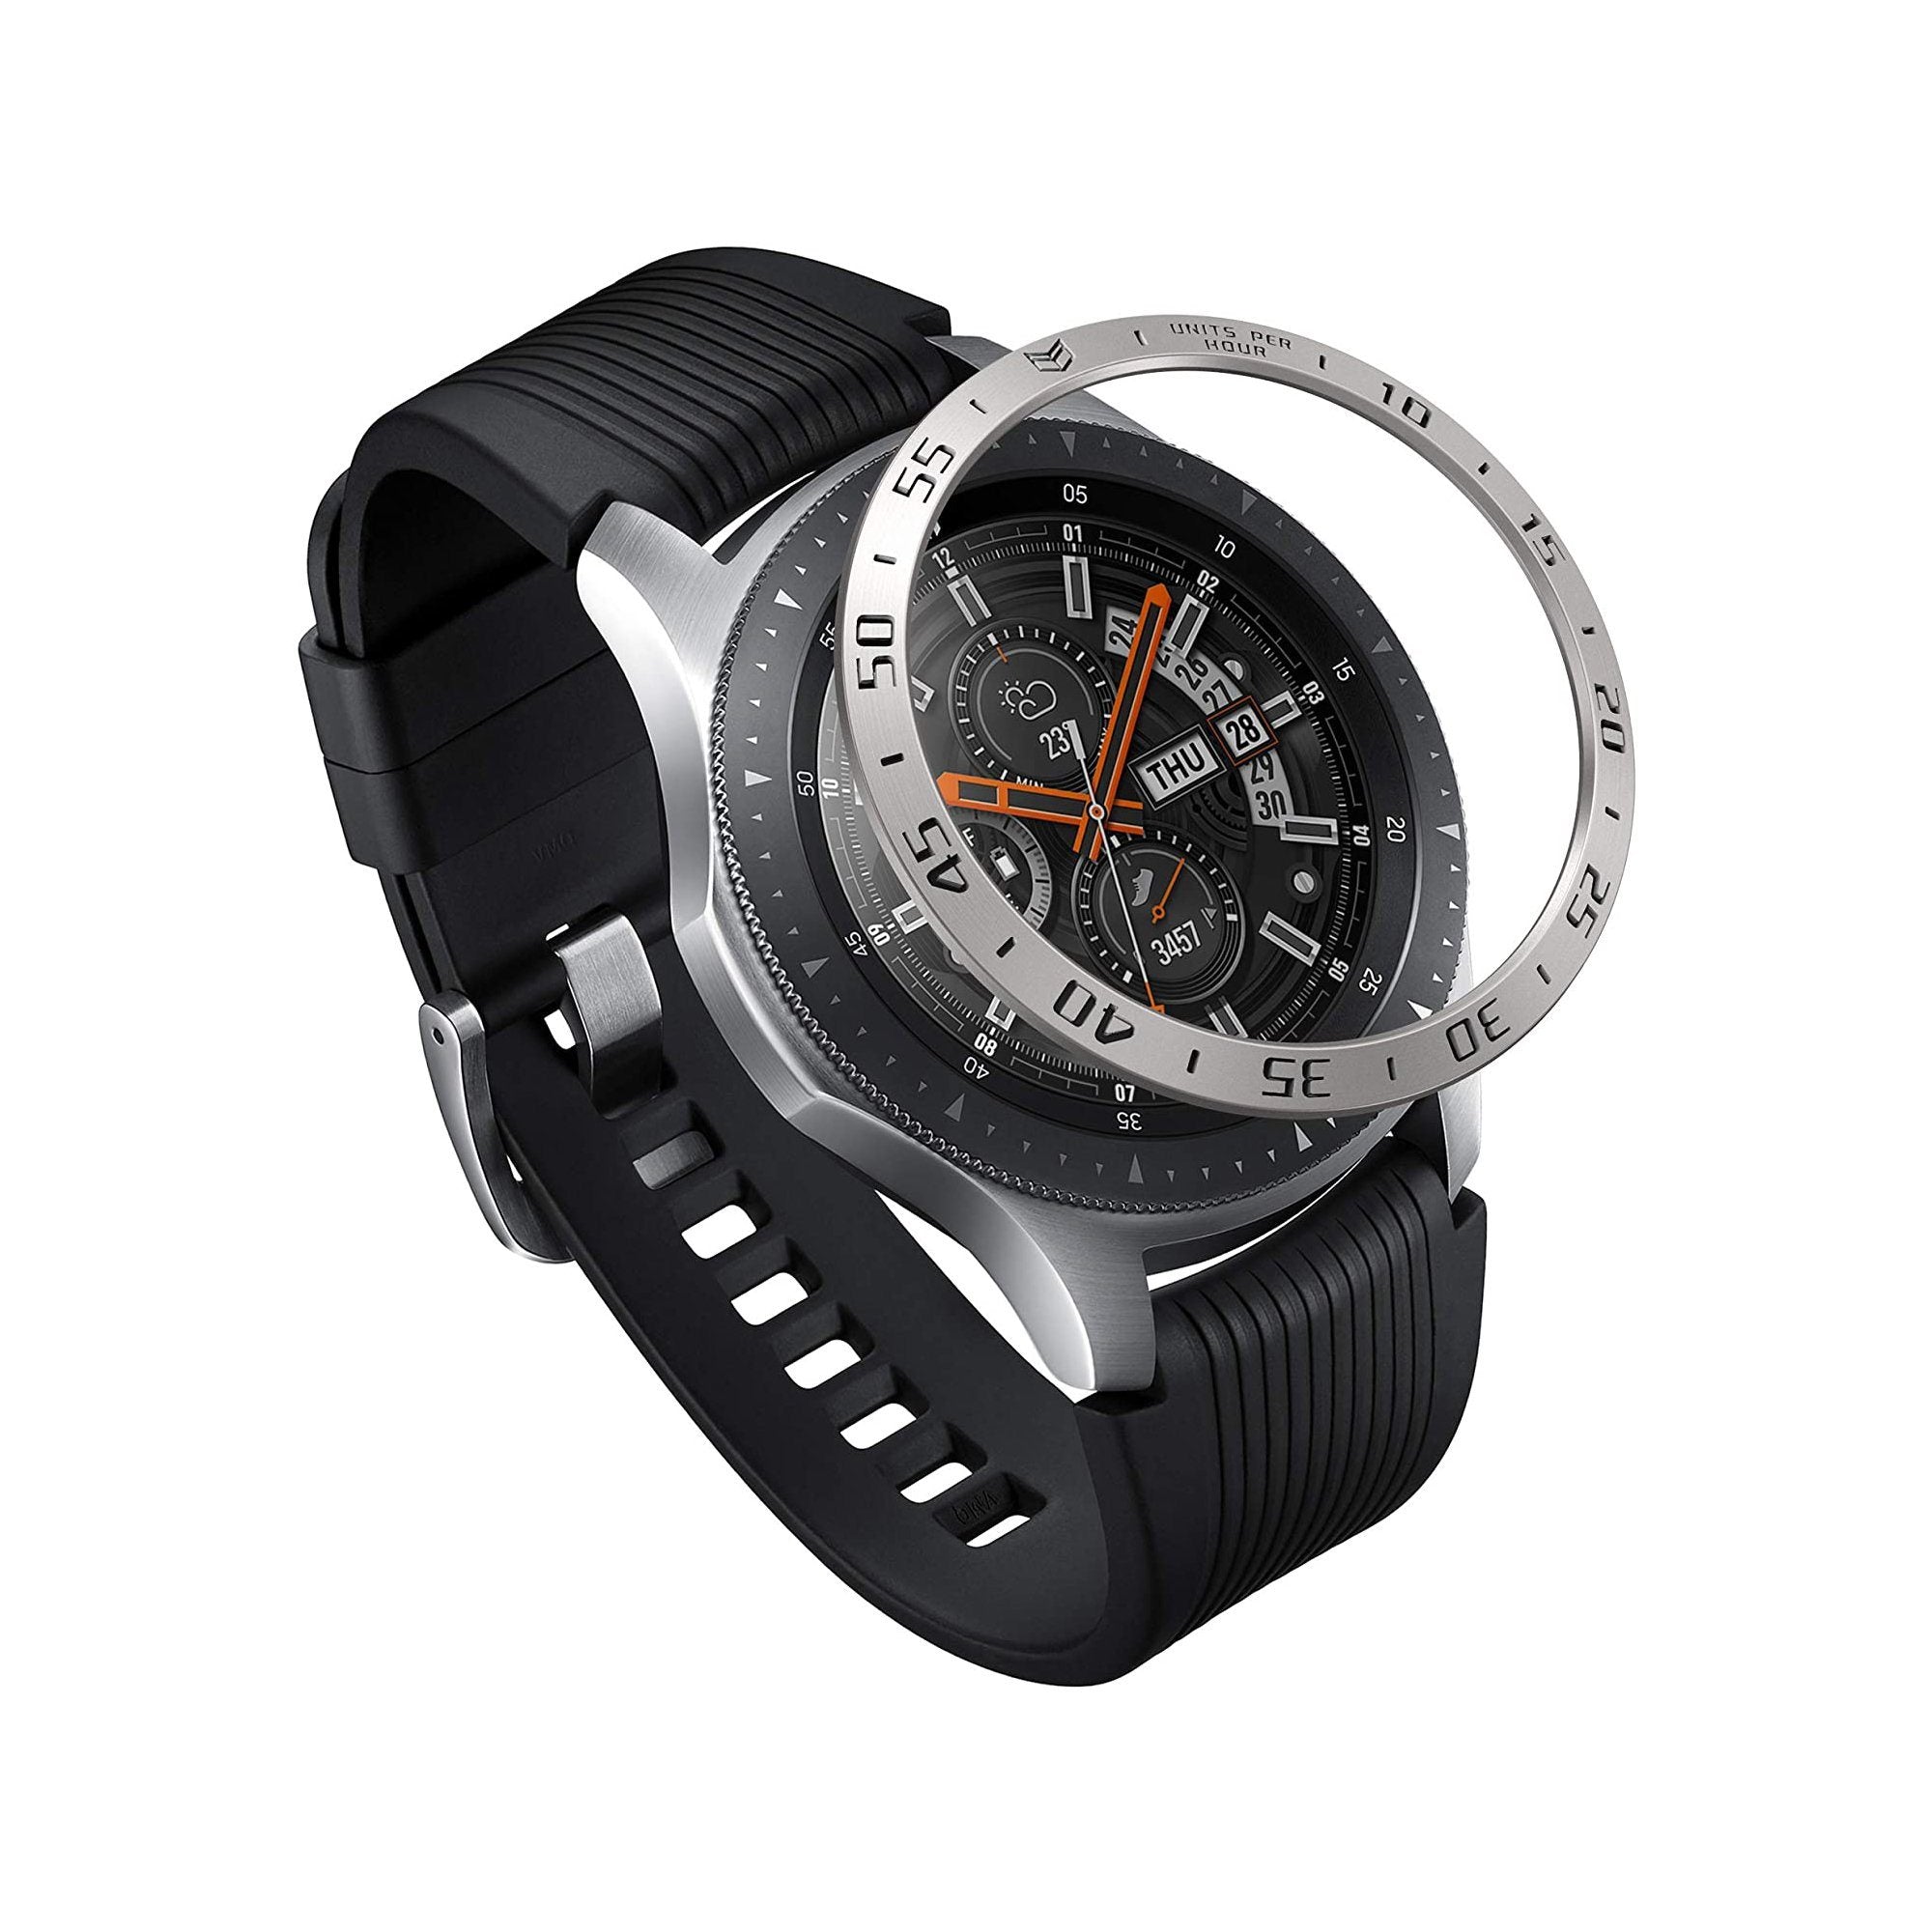 Ringke BEZEL STYLING for Galaxy Watch 46mm/Gear S3, Stainless Steel(GW-46-01) Galaxy Watch Ringke 